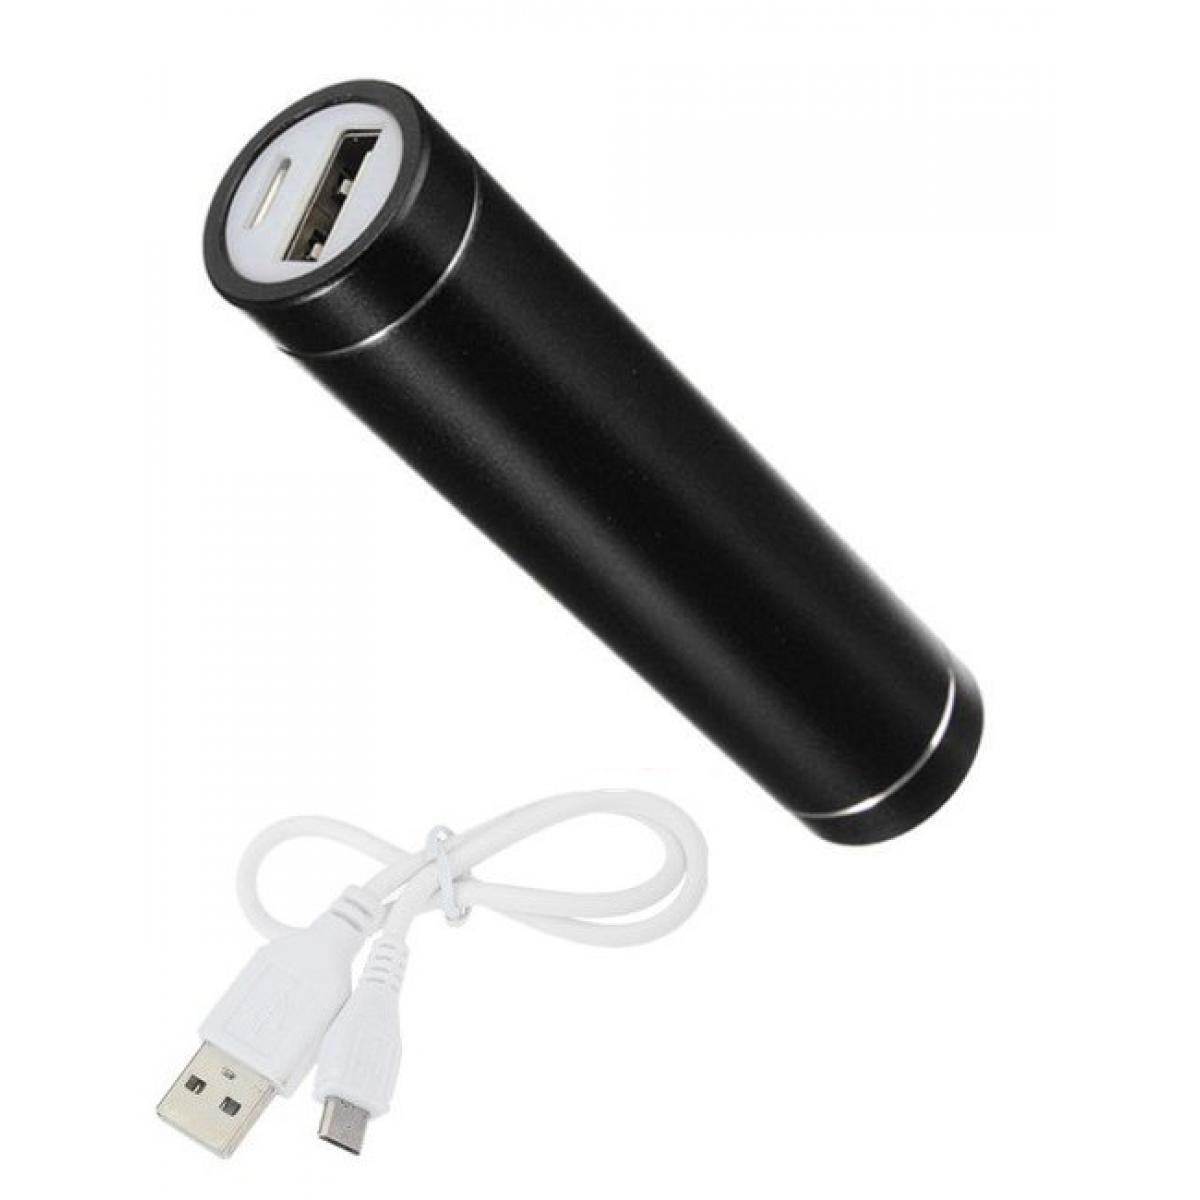 Shot - Batterie Chargeur Externe pour WIKO View 3 Lite Power Bank 2600mAh avec Cable USB/Mirco USB Secours Telephon (NOIR) - Chargeur secteur téléphone